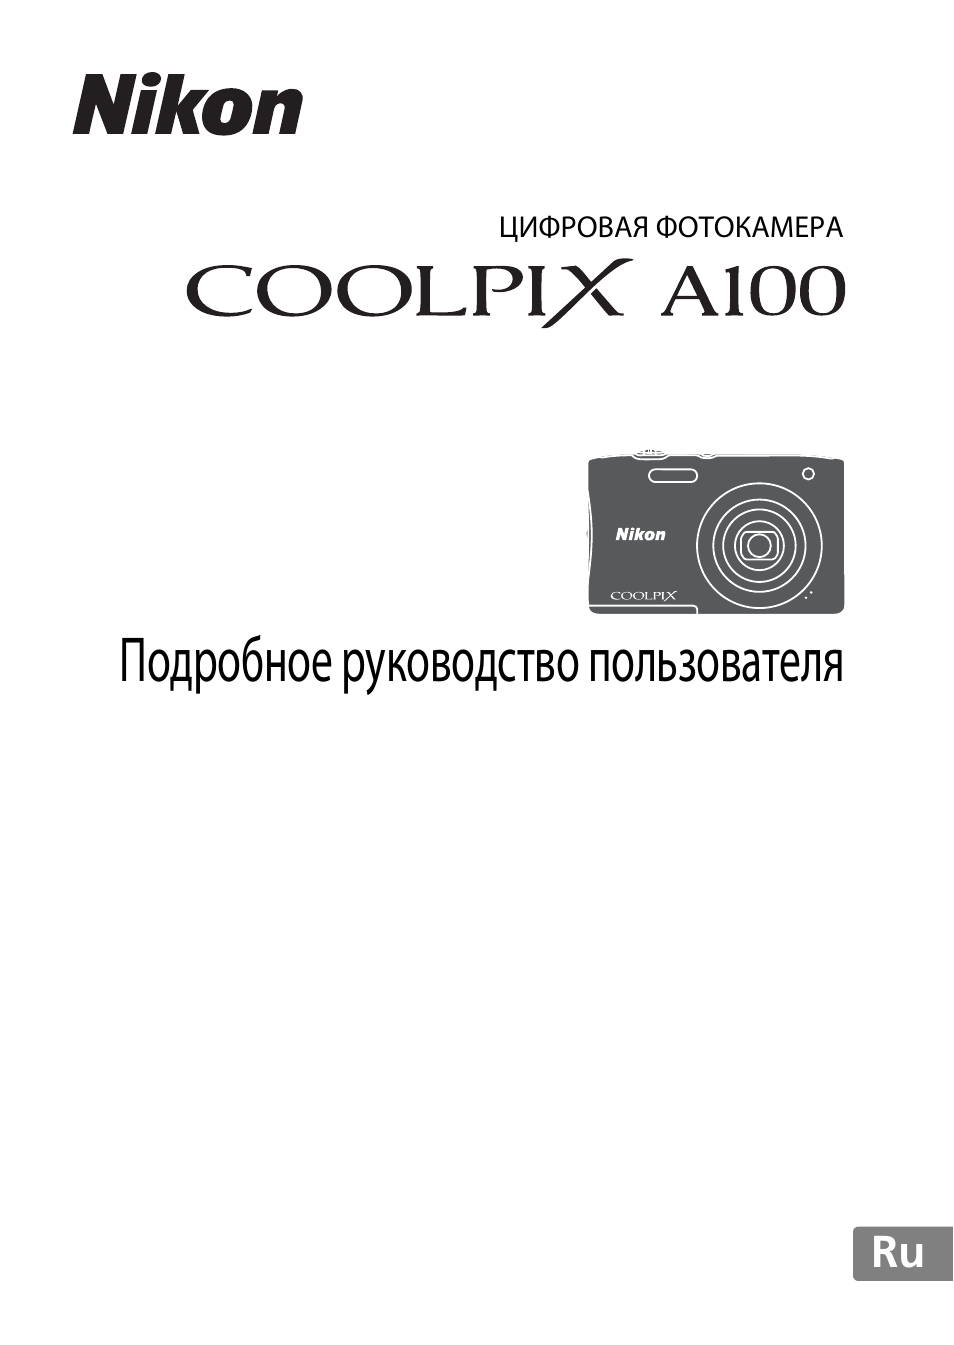 Инструкция по эксплуатации Nikon Coolpix A100 | 144 страницы